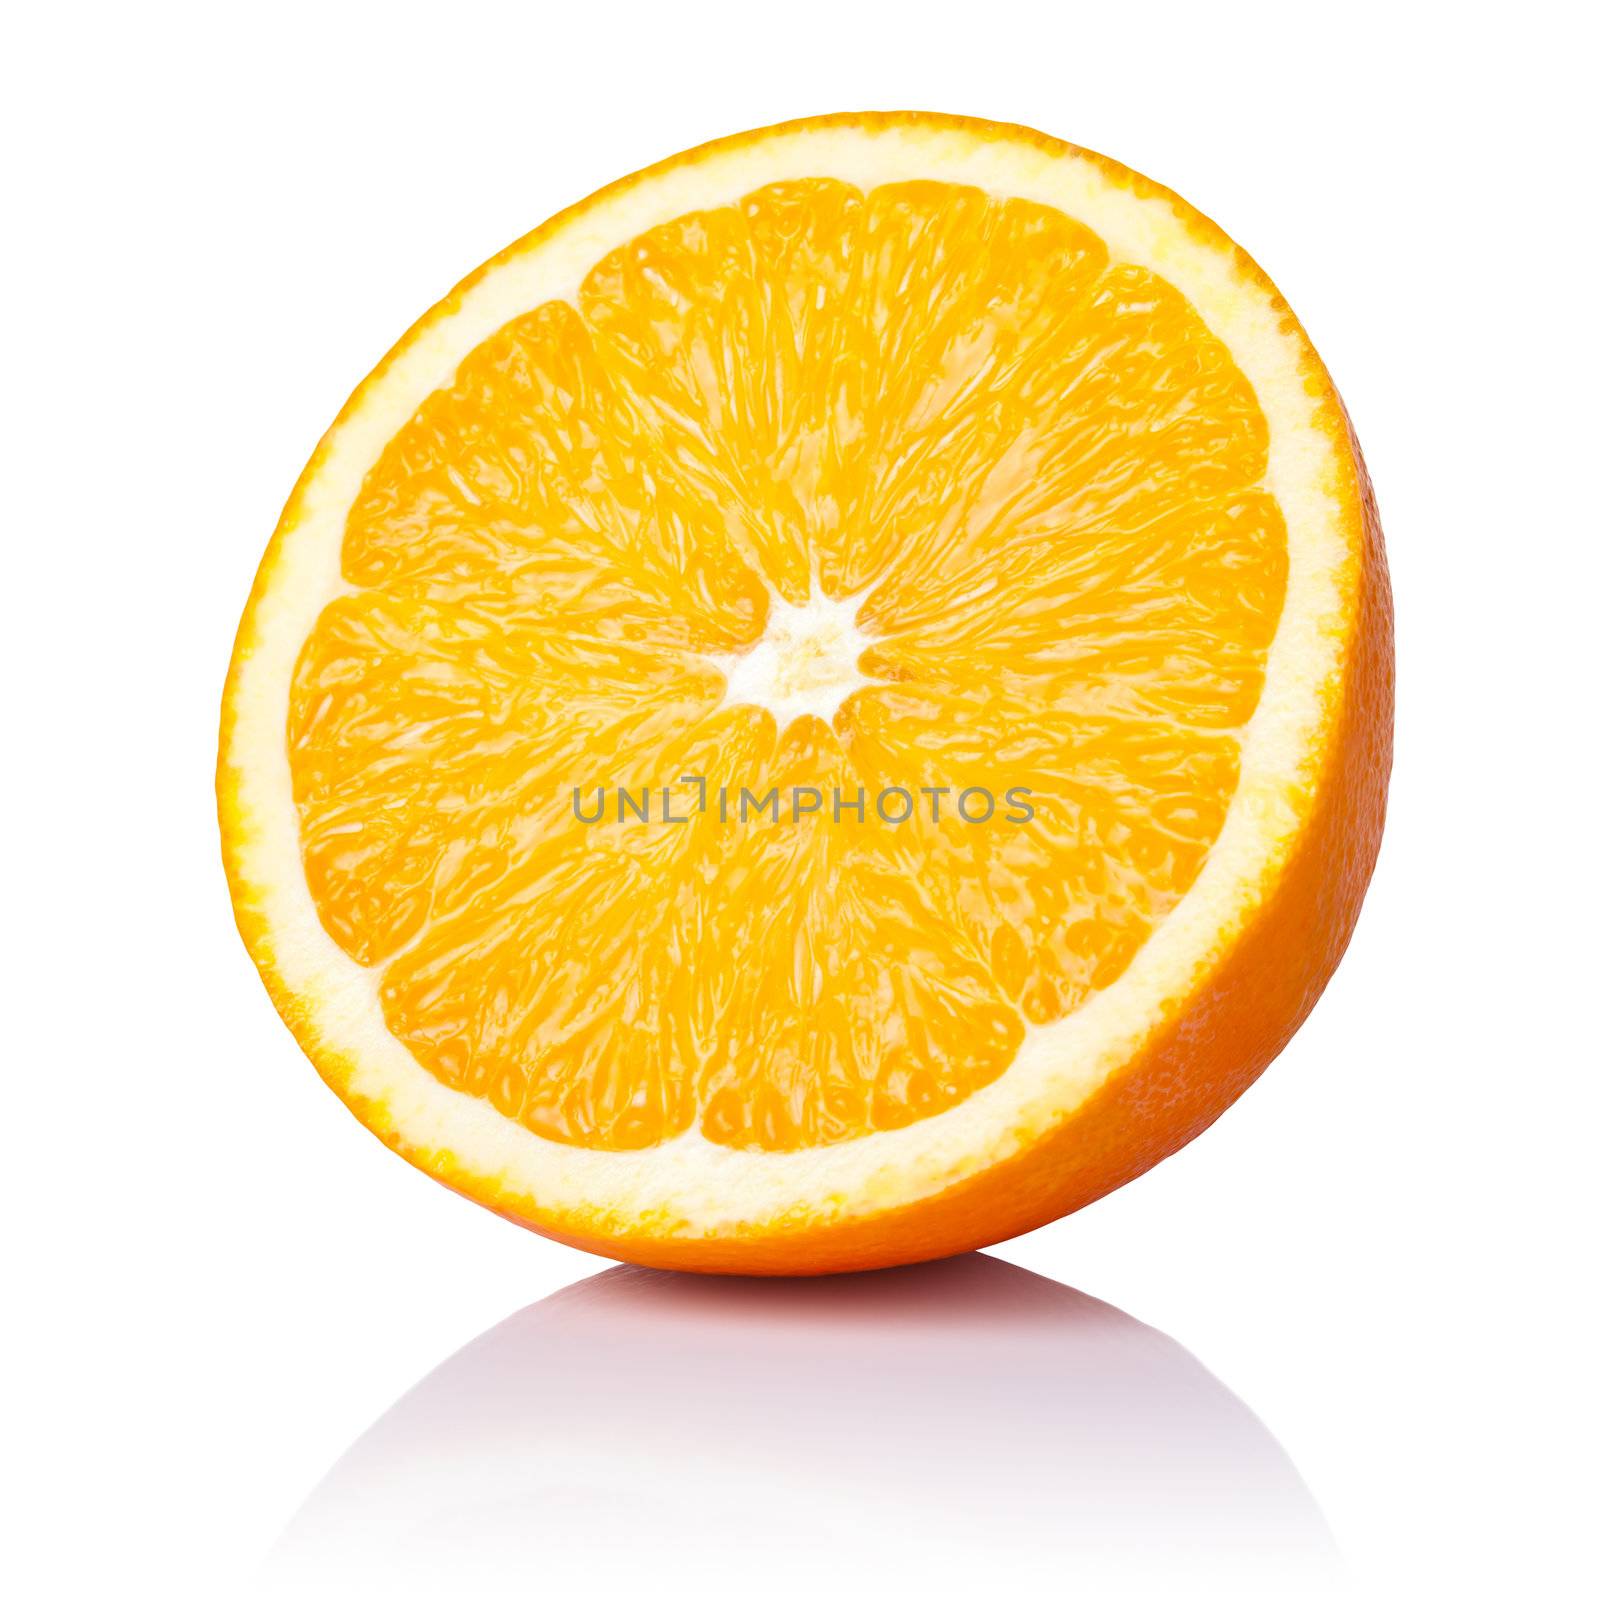 Half orange fruit on white background, fresh and juicy